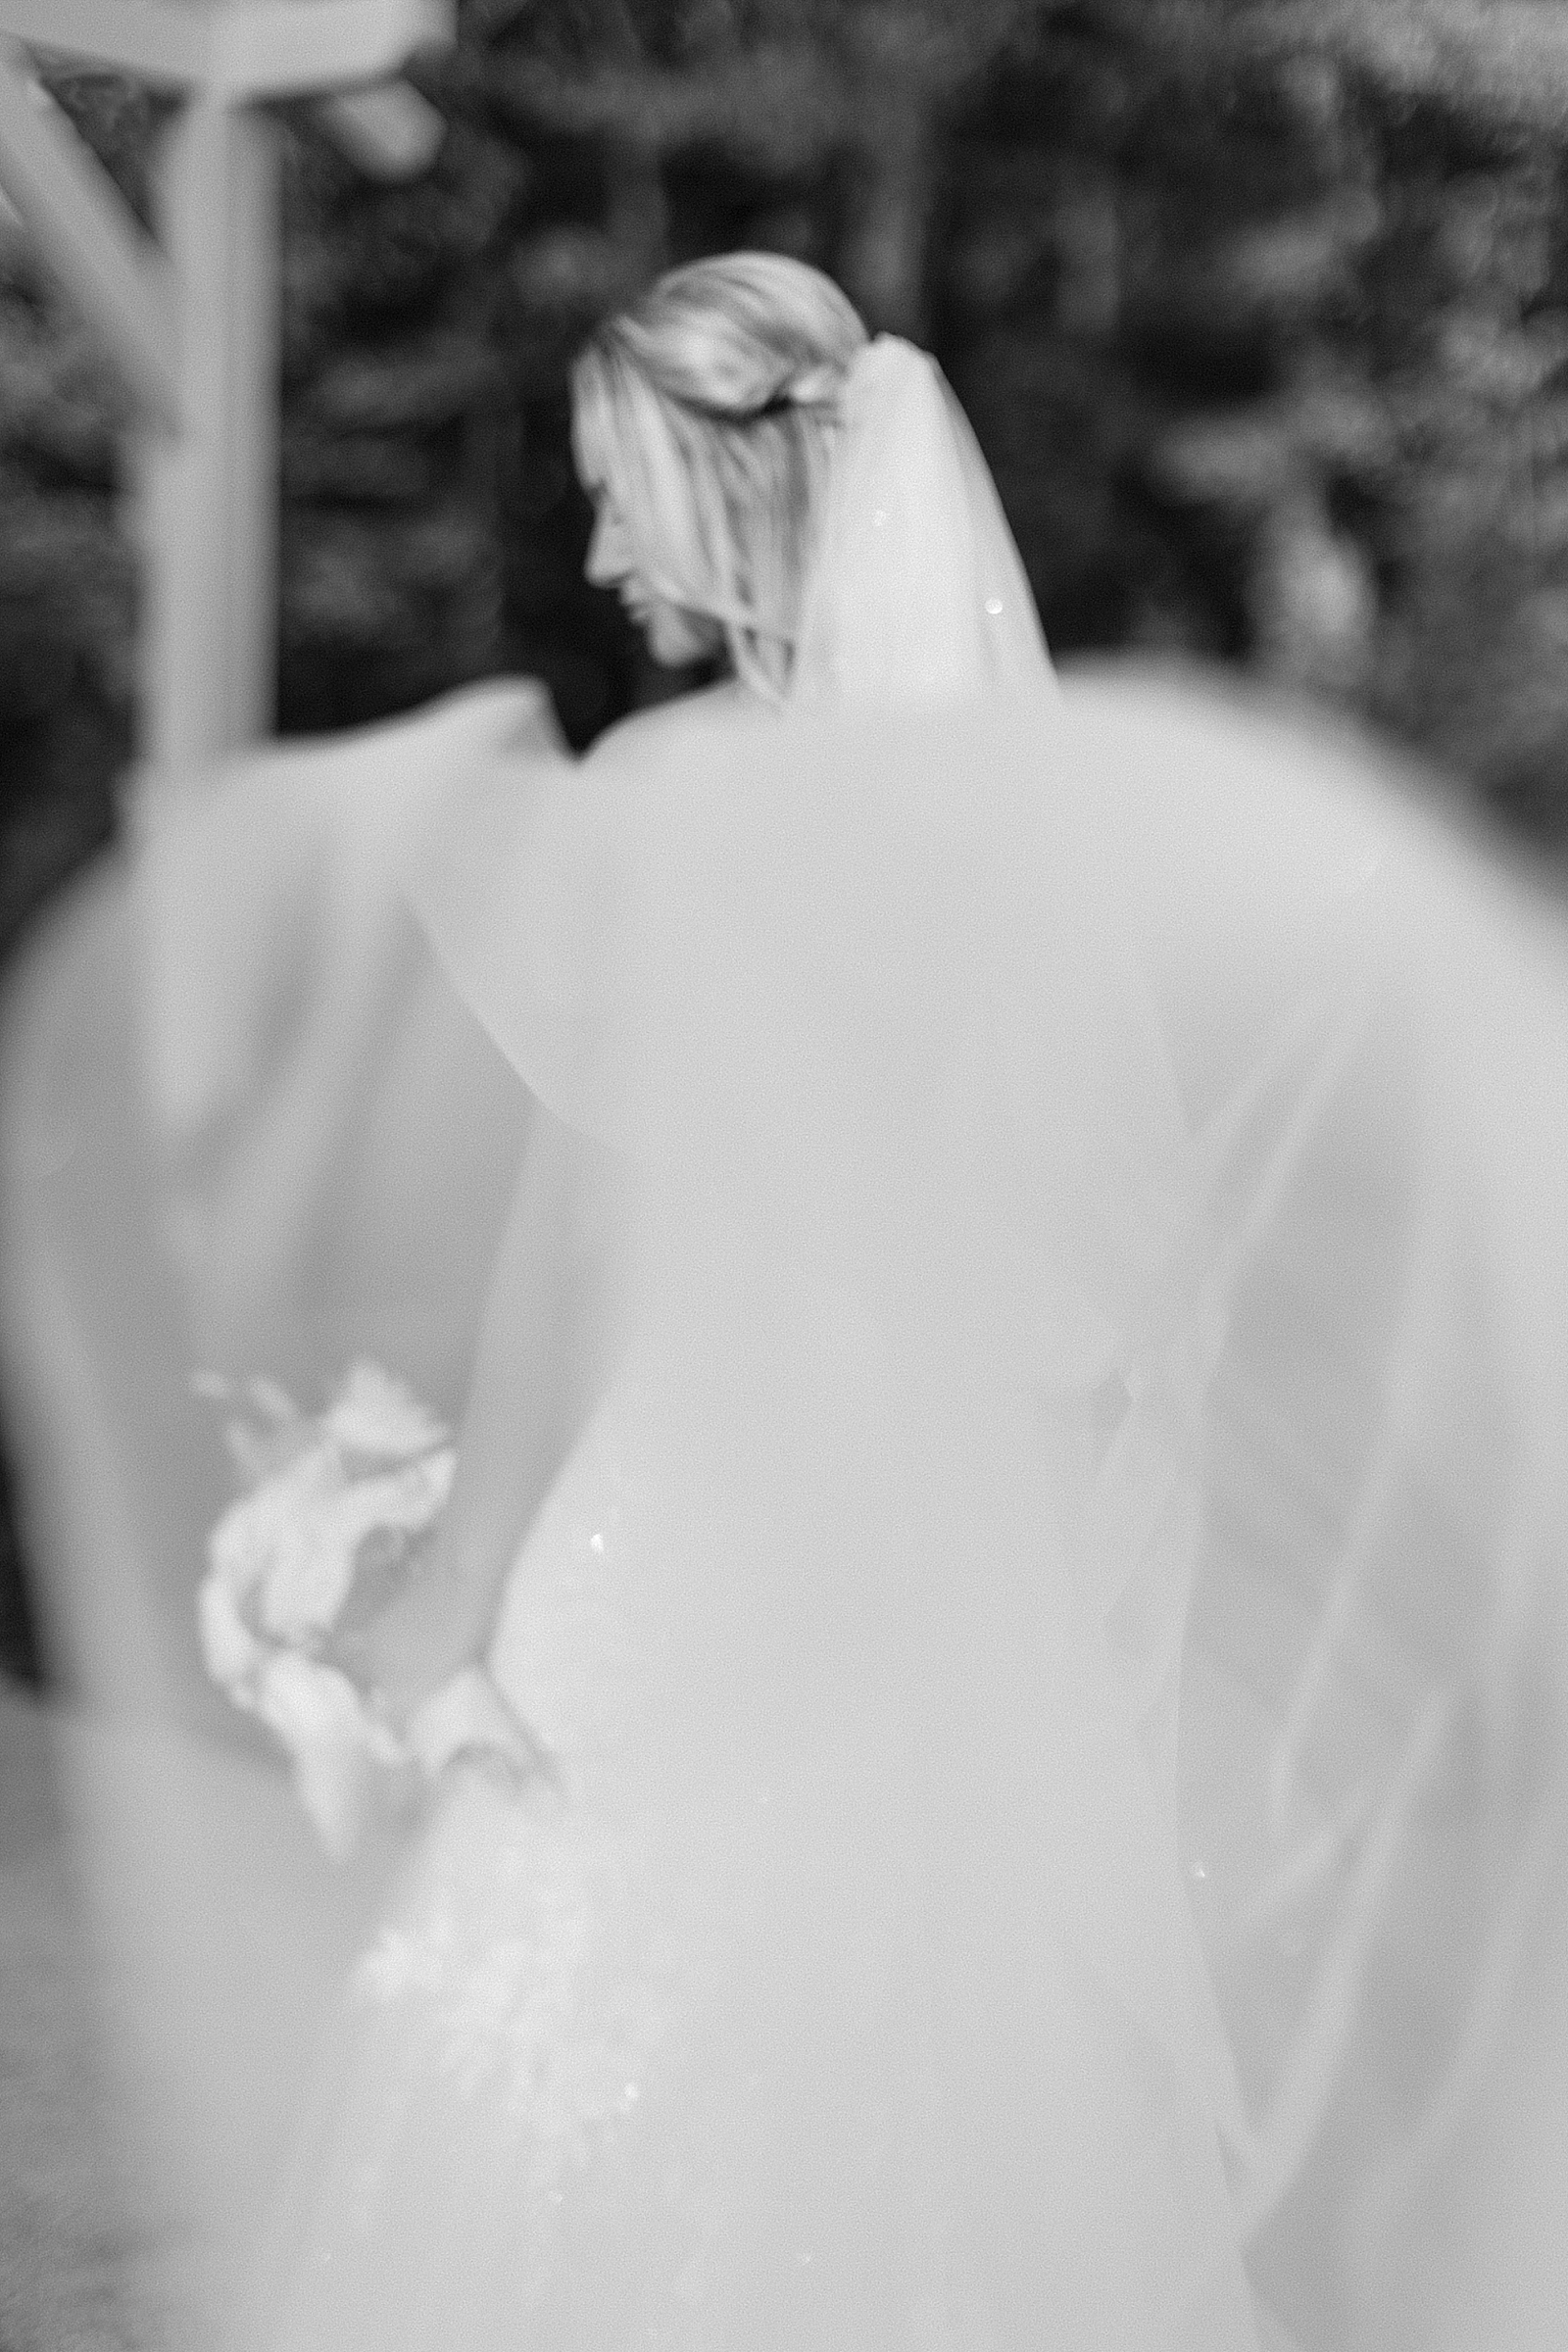 Bridal picture at white oak venue in ruston la.